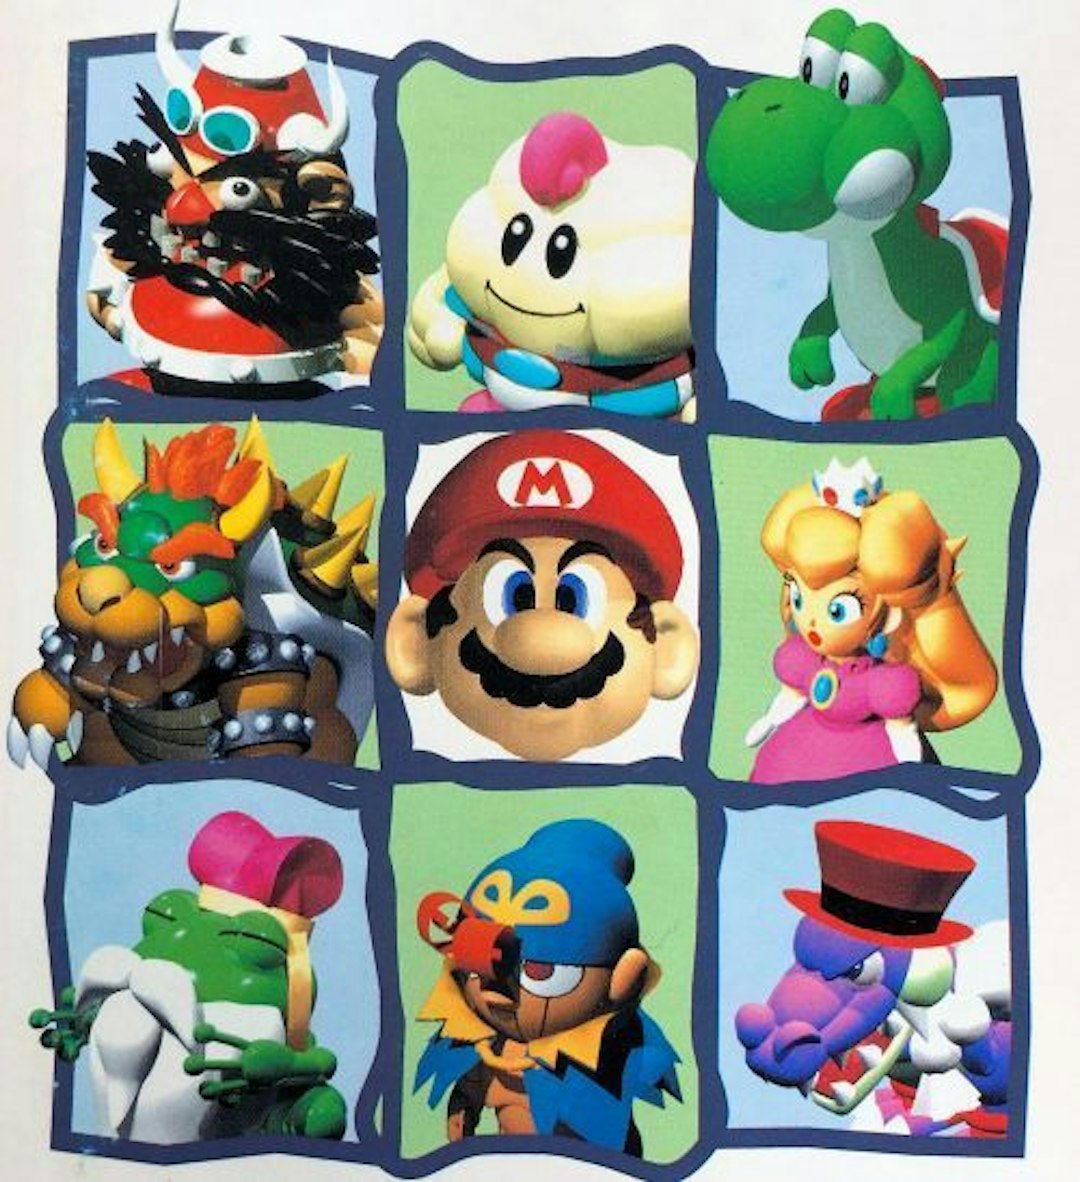 featured image - 10 game nhập vai Mario hay nhất được xếp hạng theo doanh số